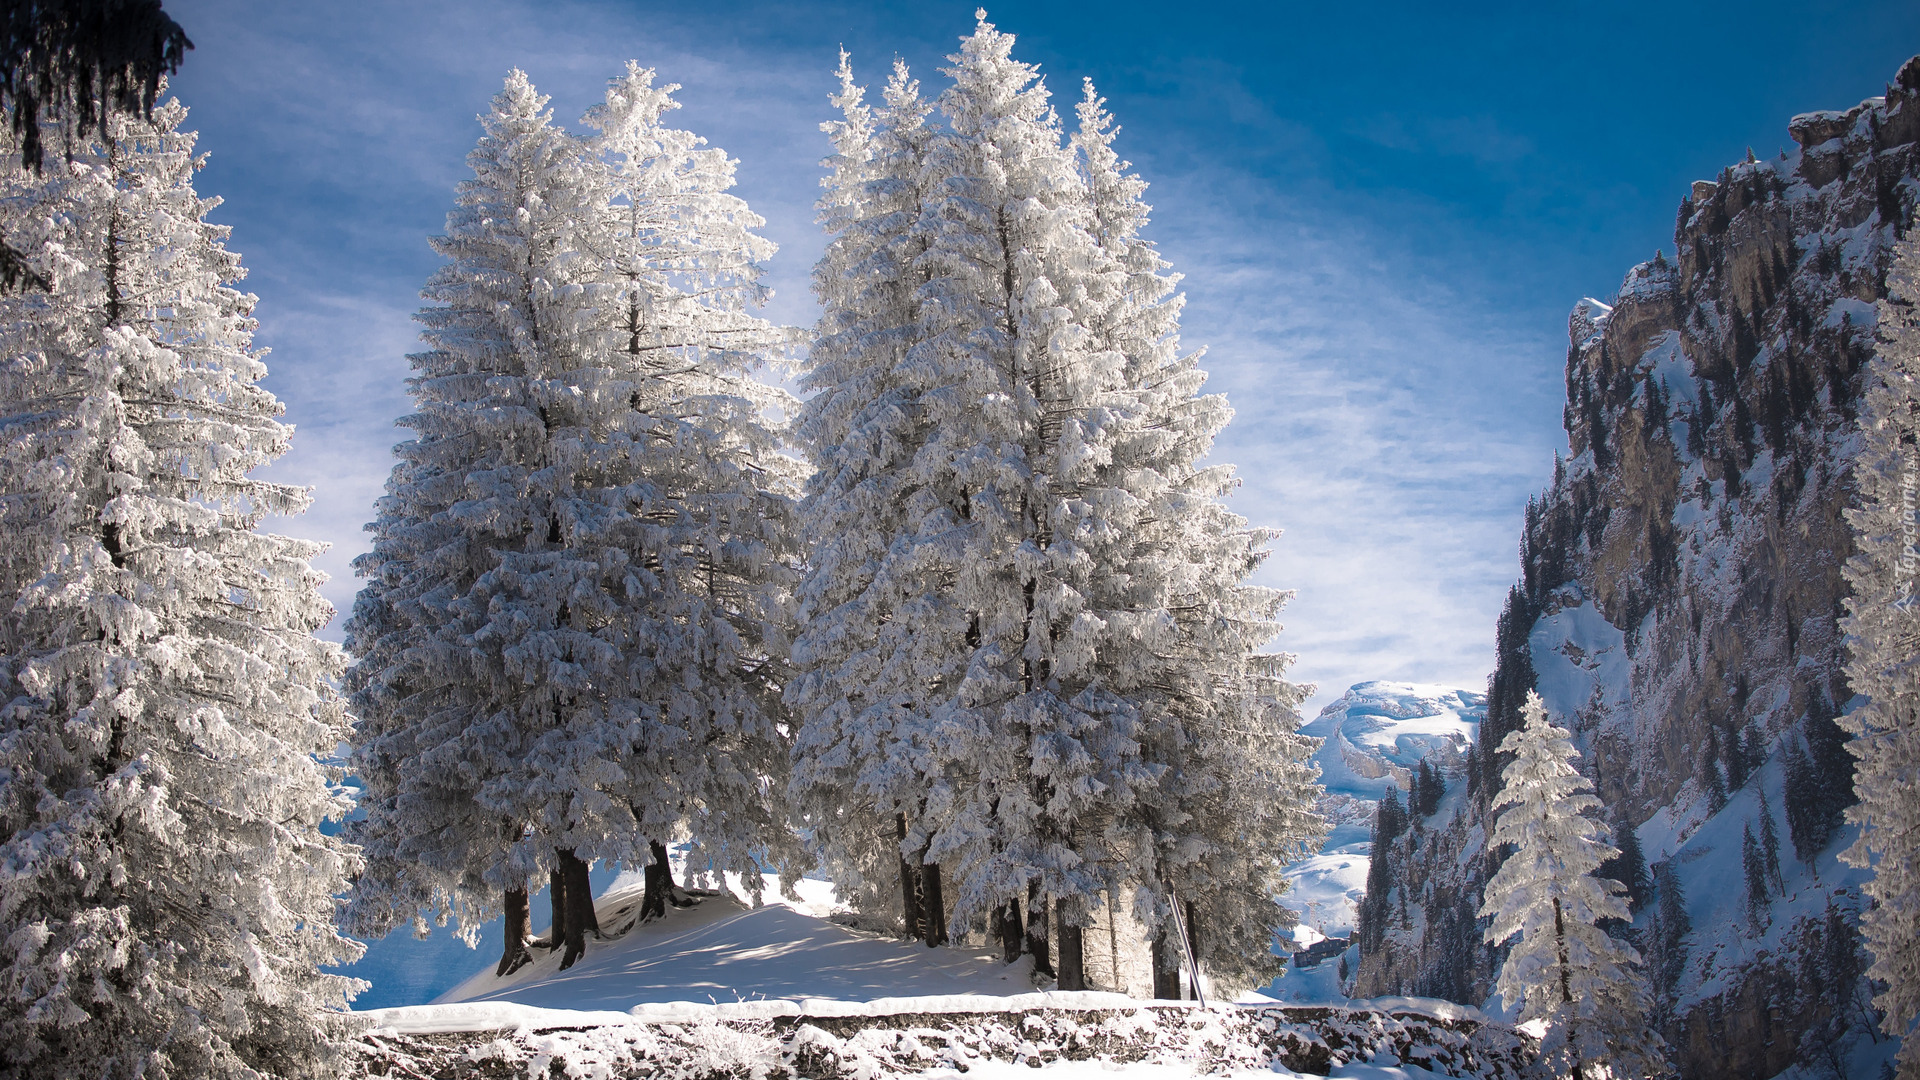 Zima, Śnieg, Skały, Drzewa